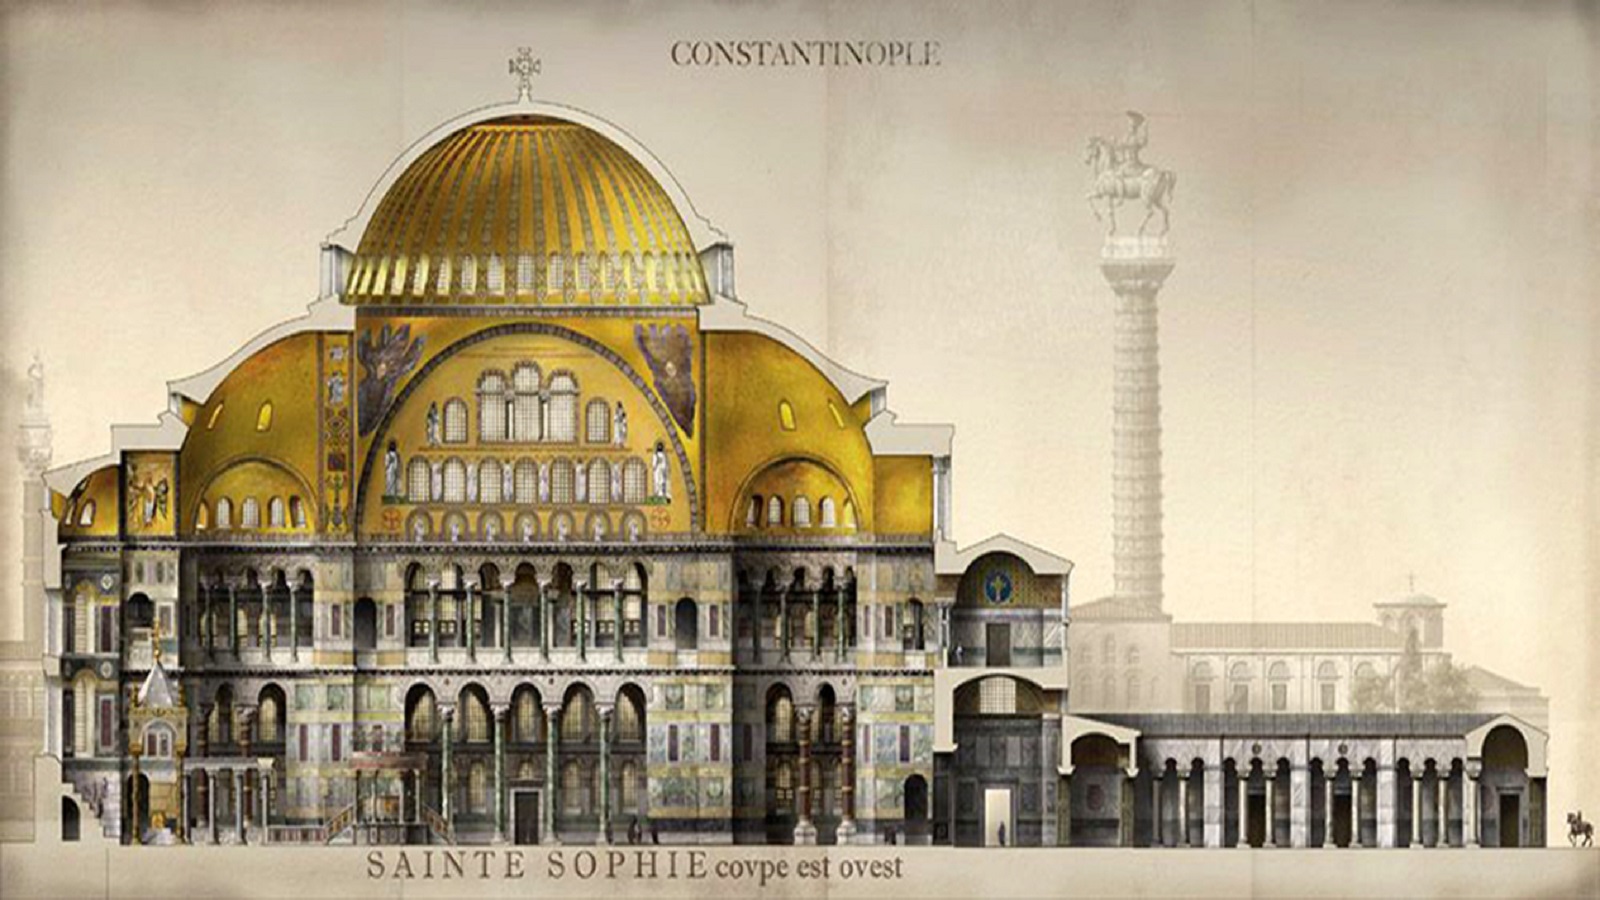 كنيسة أيا صوفيا البيزنطية، رسم توثيقي من توقيع أنطوان هلبرت.